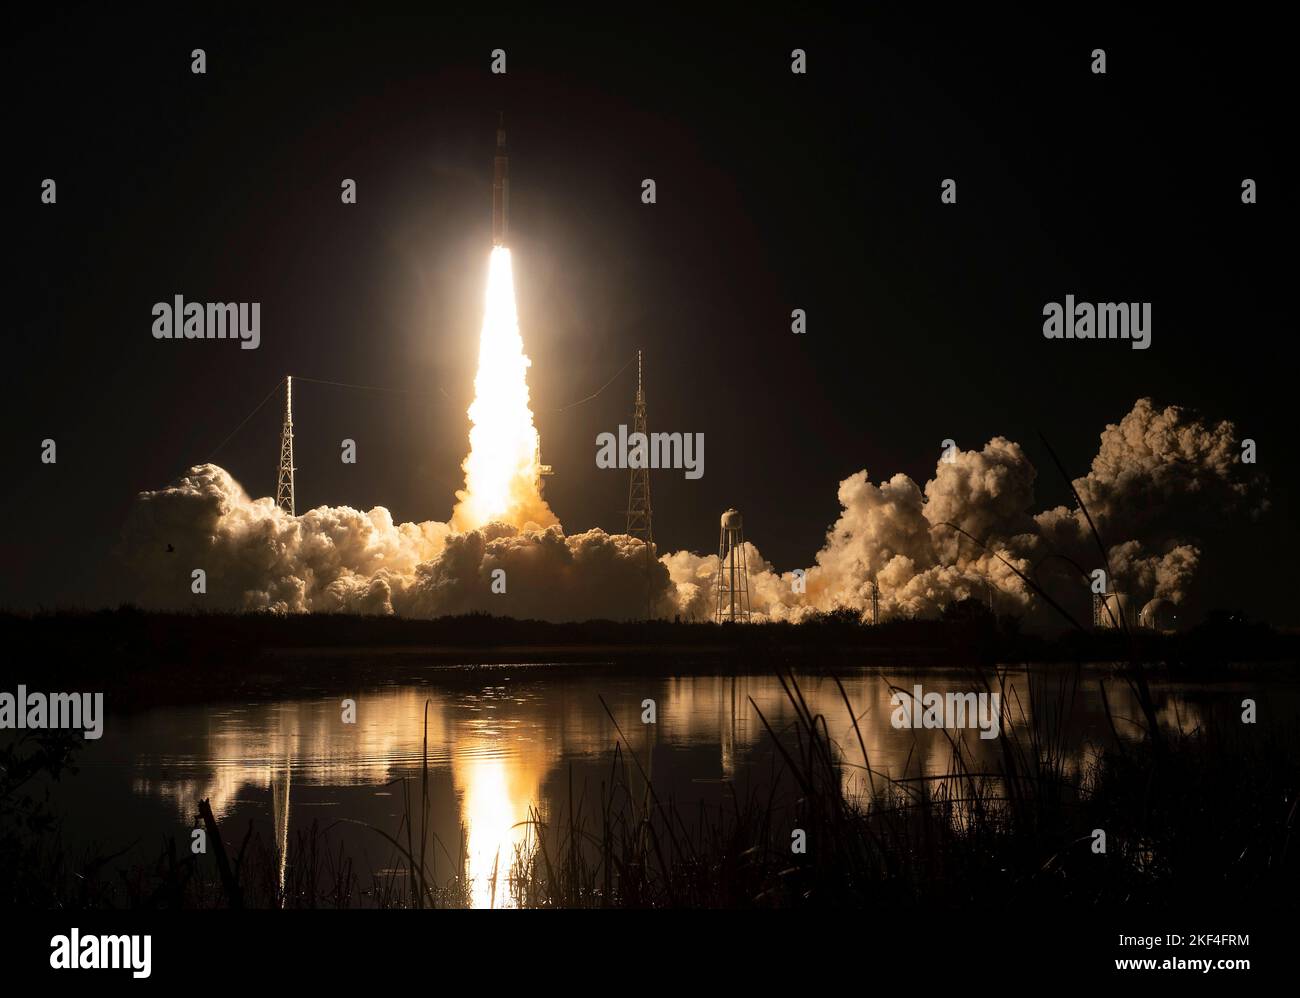 Centro Espacial Kennedy, Estados Unidos de América. 16 de noviembre de 2022. Los cohetes masivos del cohete del Sistema de Lanzamiento Espacial Artemis I de la NASA elevan la nave espacial Orion hacia el cielo de la mañana temprano desde el Complejo de Lanzamiento 39B llevando la nave espacial Orion desde el Centro Espacial Kennedy, el 16 de noviembre de 2022, en Cabo Cañaveral, Florida. Después de varios intentos fallidos, la prueba de vuelo sin tripulación se levantó en la primera prueba de la misión de exploración del espacio profundo. Crédito: Keegan Barber/NASA/Alamy Live News Foto de stock